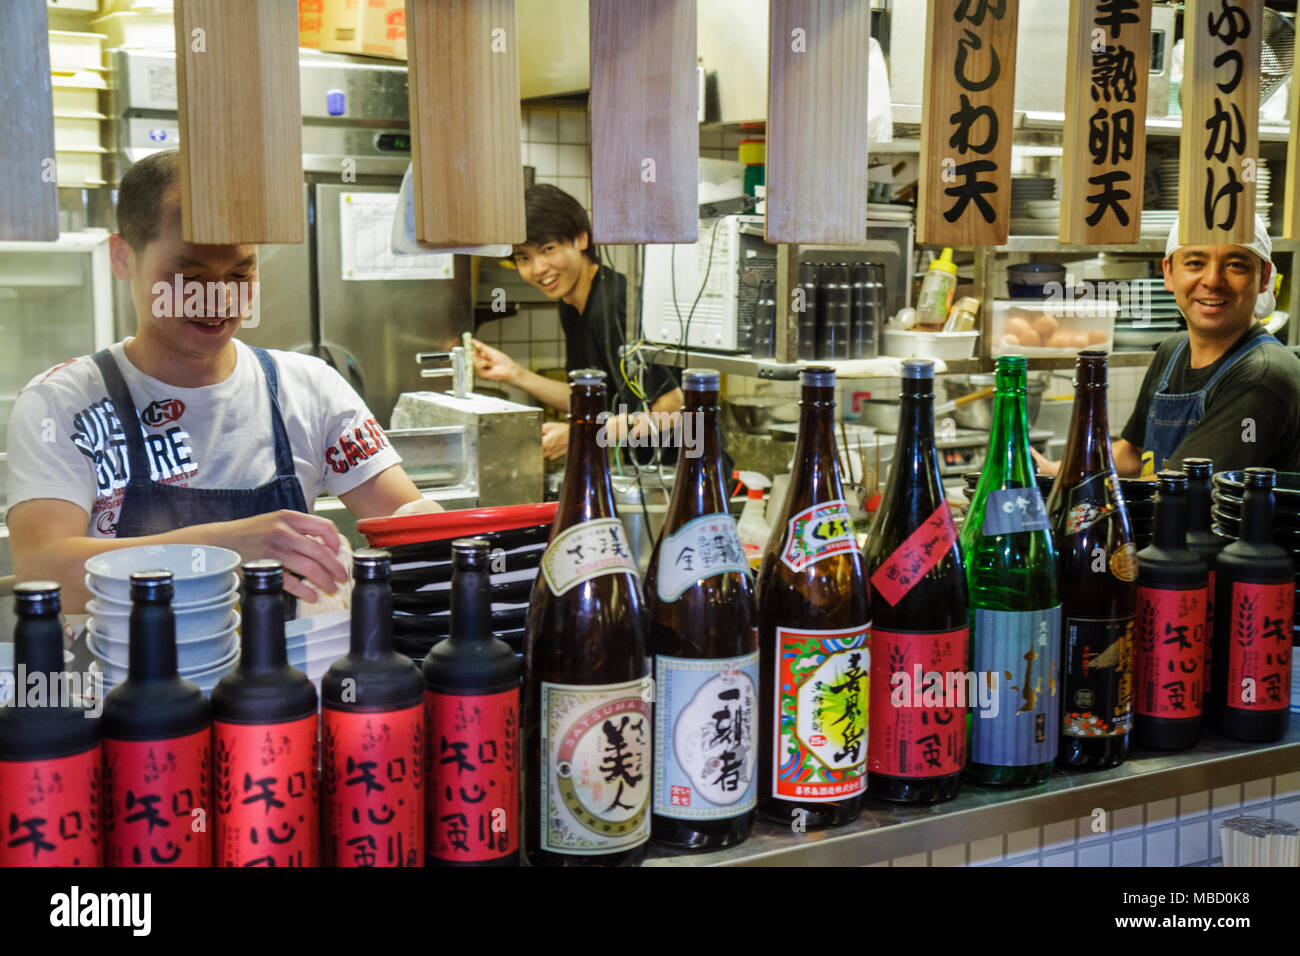 Tokio Japan, Akihabara, Asiatisch-orientalisch, Mann Männer Erwachsene Erwachsene, Arbeiter, Restaurant Restaurants Essen Essen Essen Café Cafés, Küche, Koch, Kanji, Japanisches Engli Stockfoto